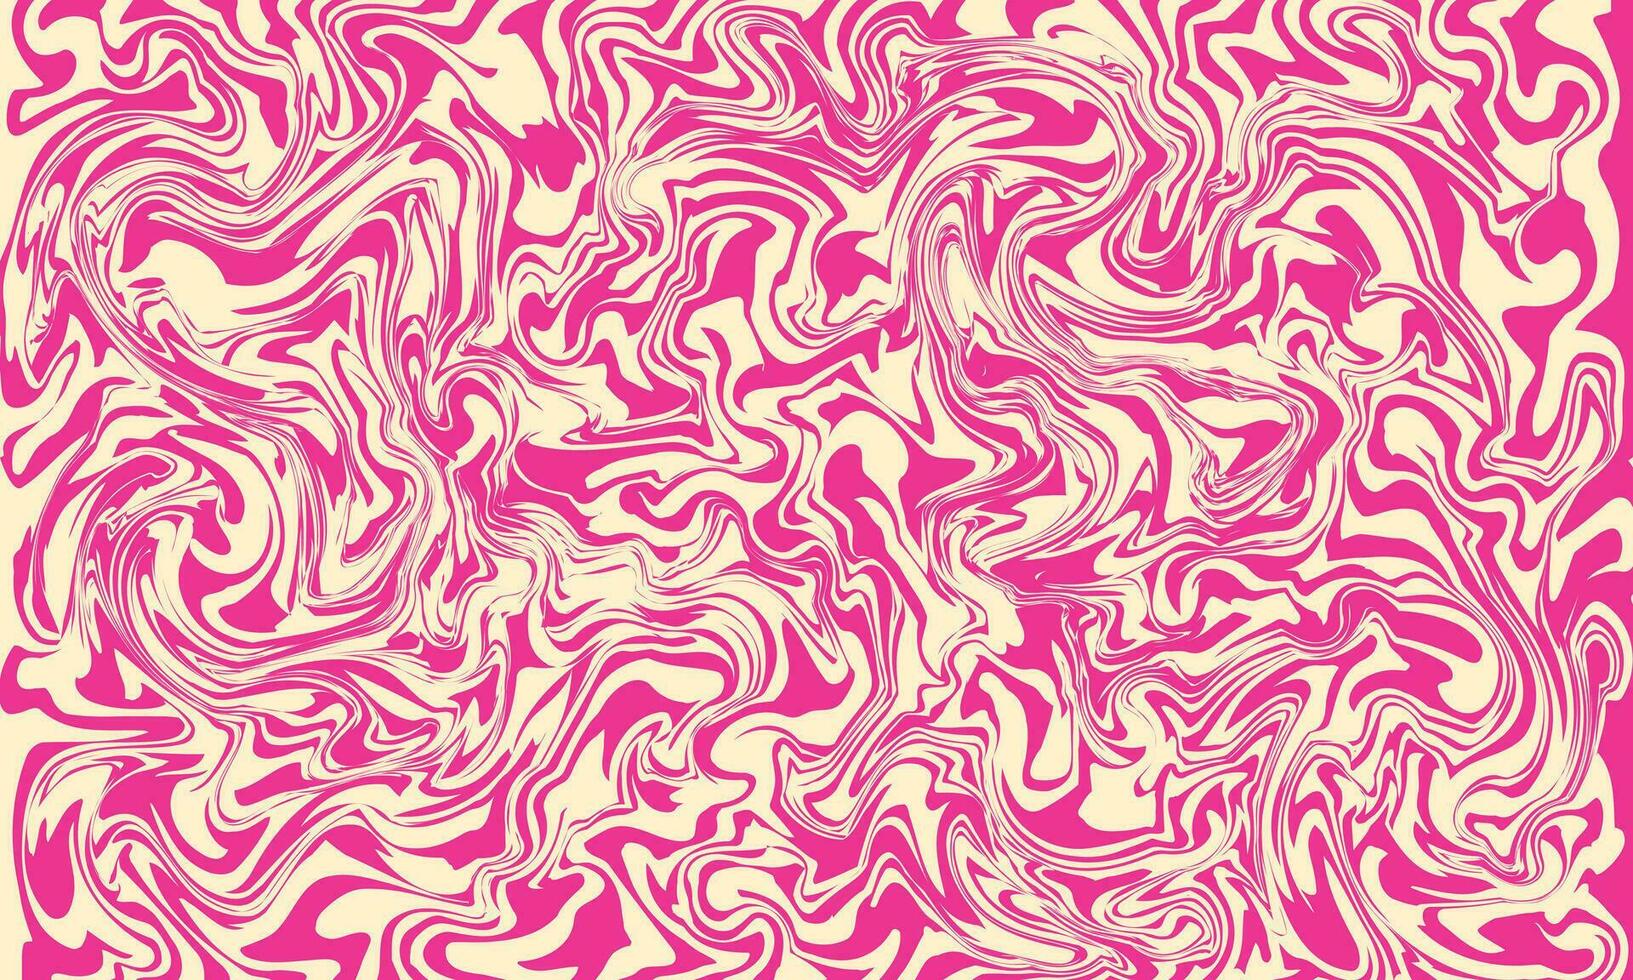 abstract roze vloeistof kolken achtergrond sjabloon kopiëren ruimte. vloeistof inkt backdrop ontwerp. hedendaags dynamisch kunst grafisch element voor poster, banier, landen bladzijde, tijdschrift omslag, of presentatie. vector